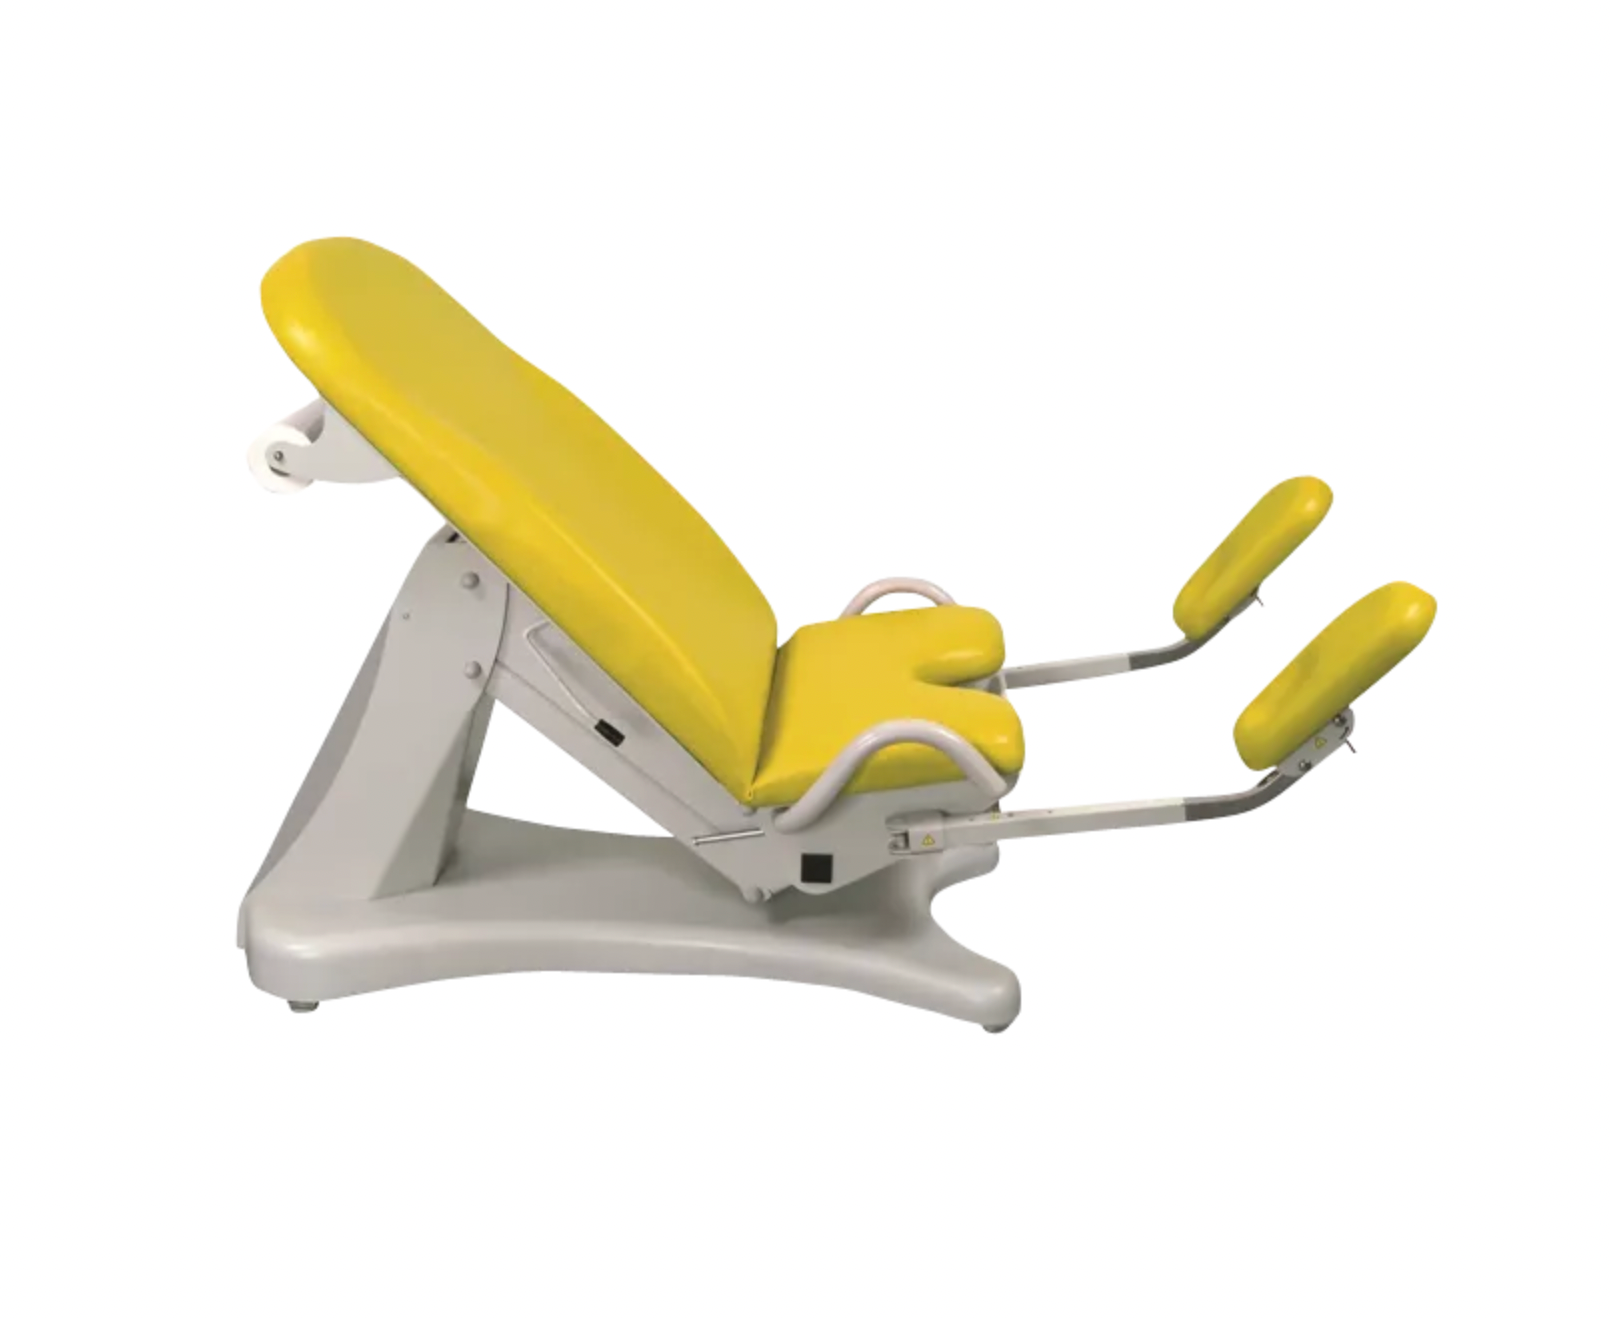 ELANSA fauteuil gynécologie jaune citron avec appui pieds de chez Promotal made in France by Tablelya